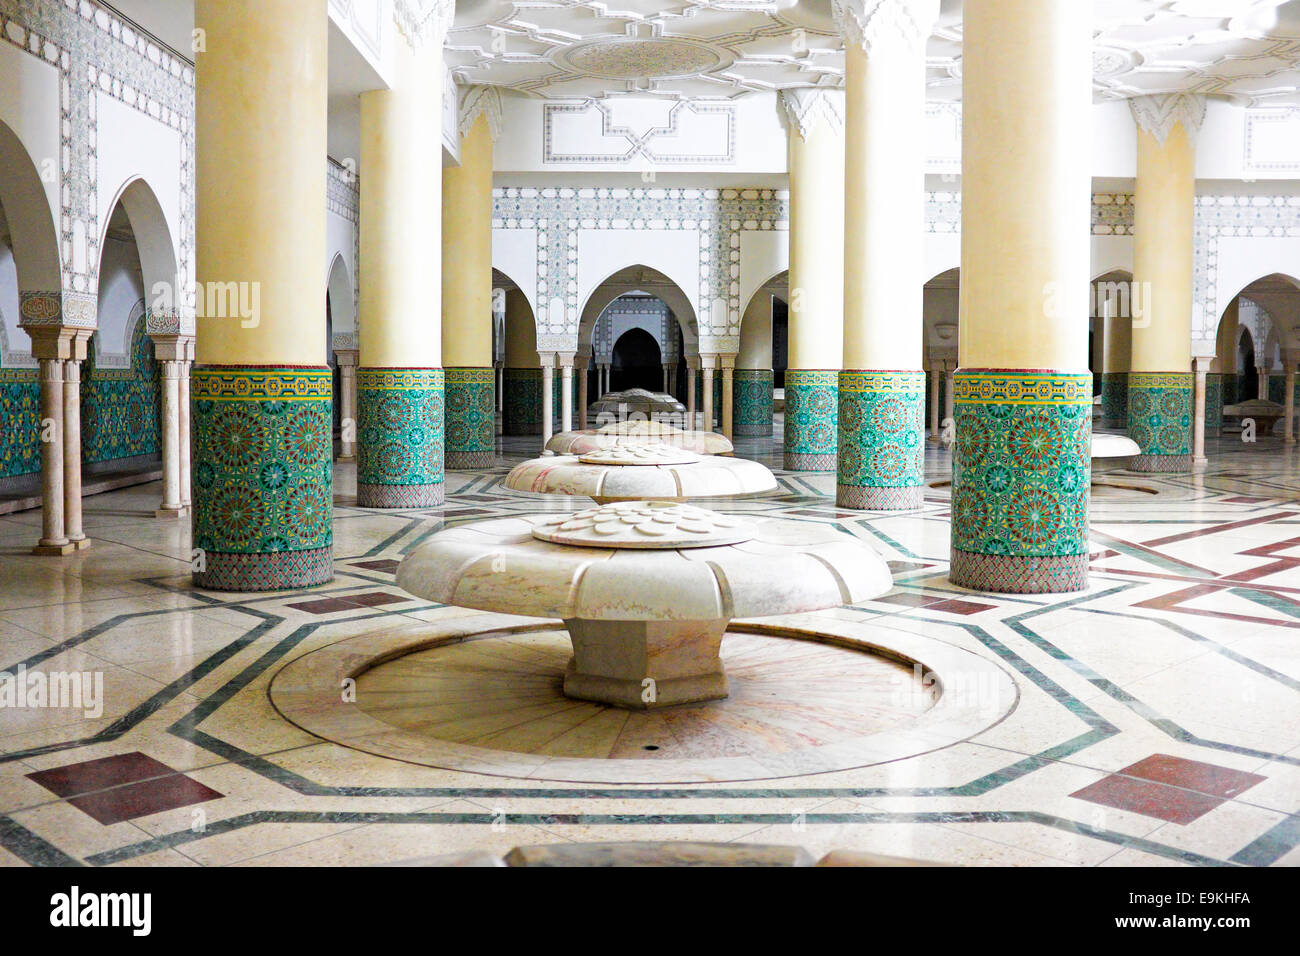 Innenbögen und Mosaik Fliesen Arbeit des Hamam-Dampfbad in Hassan II Moschee in Casablanca, Marokko. Stockfoto